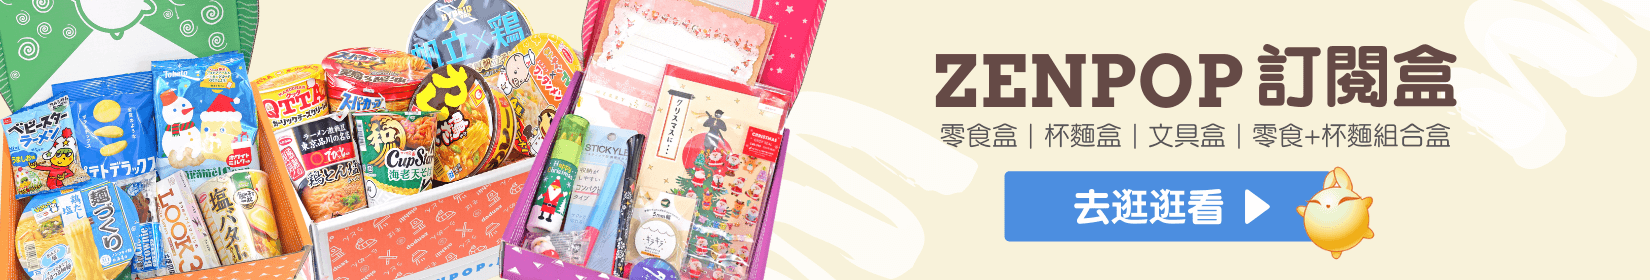 ZenPop日本訂閱盒